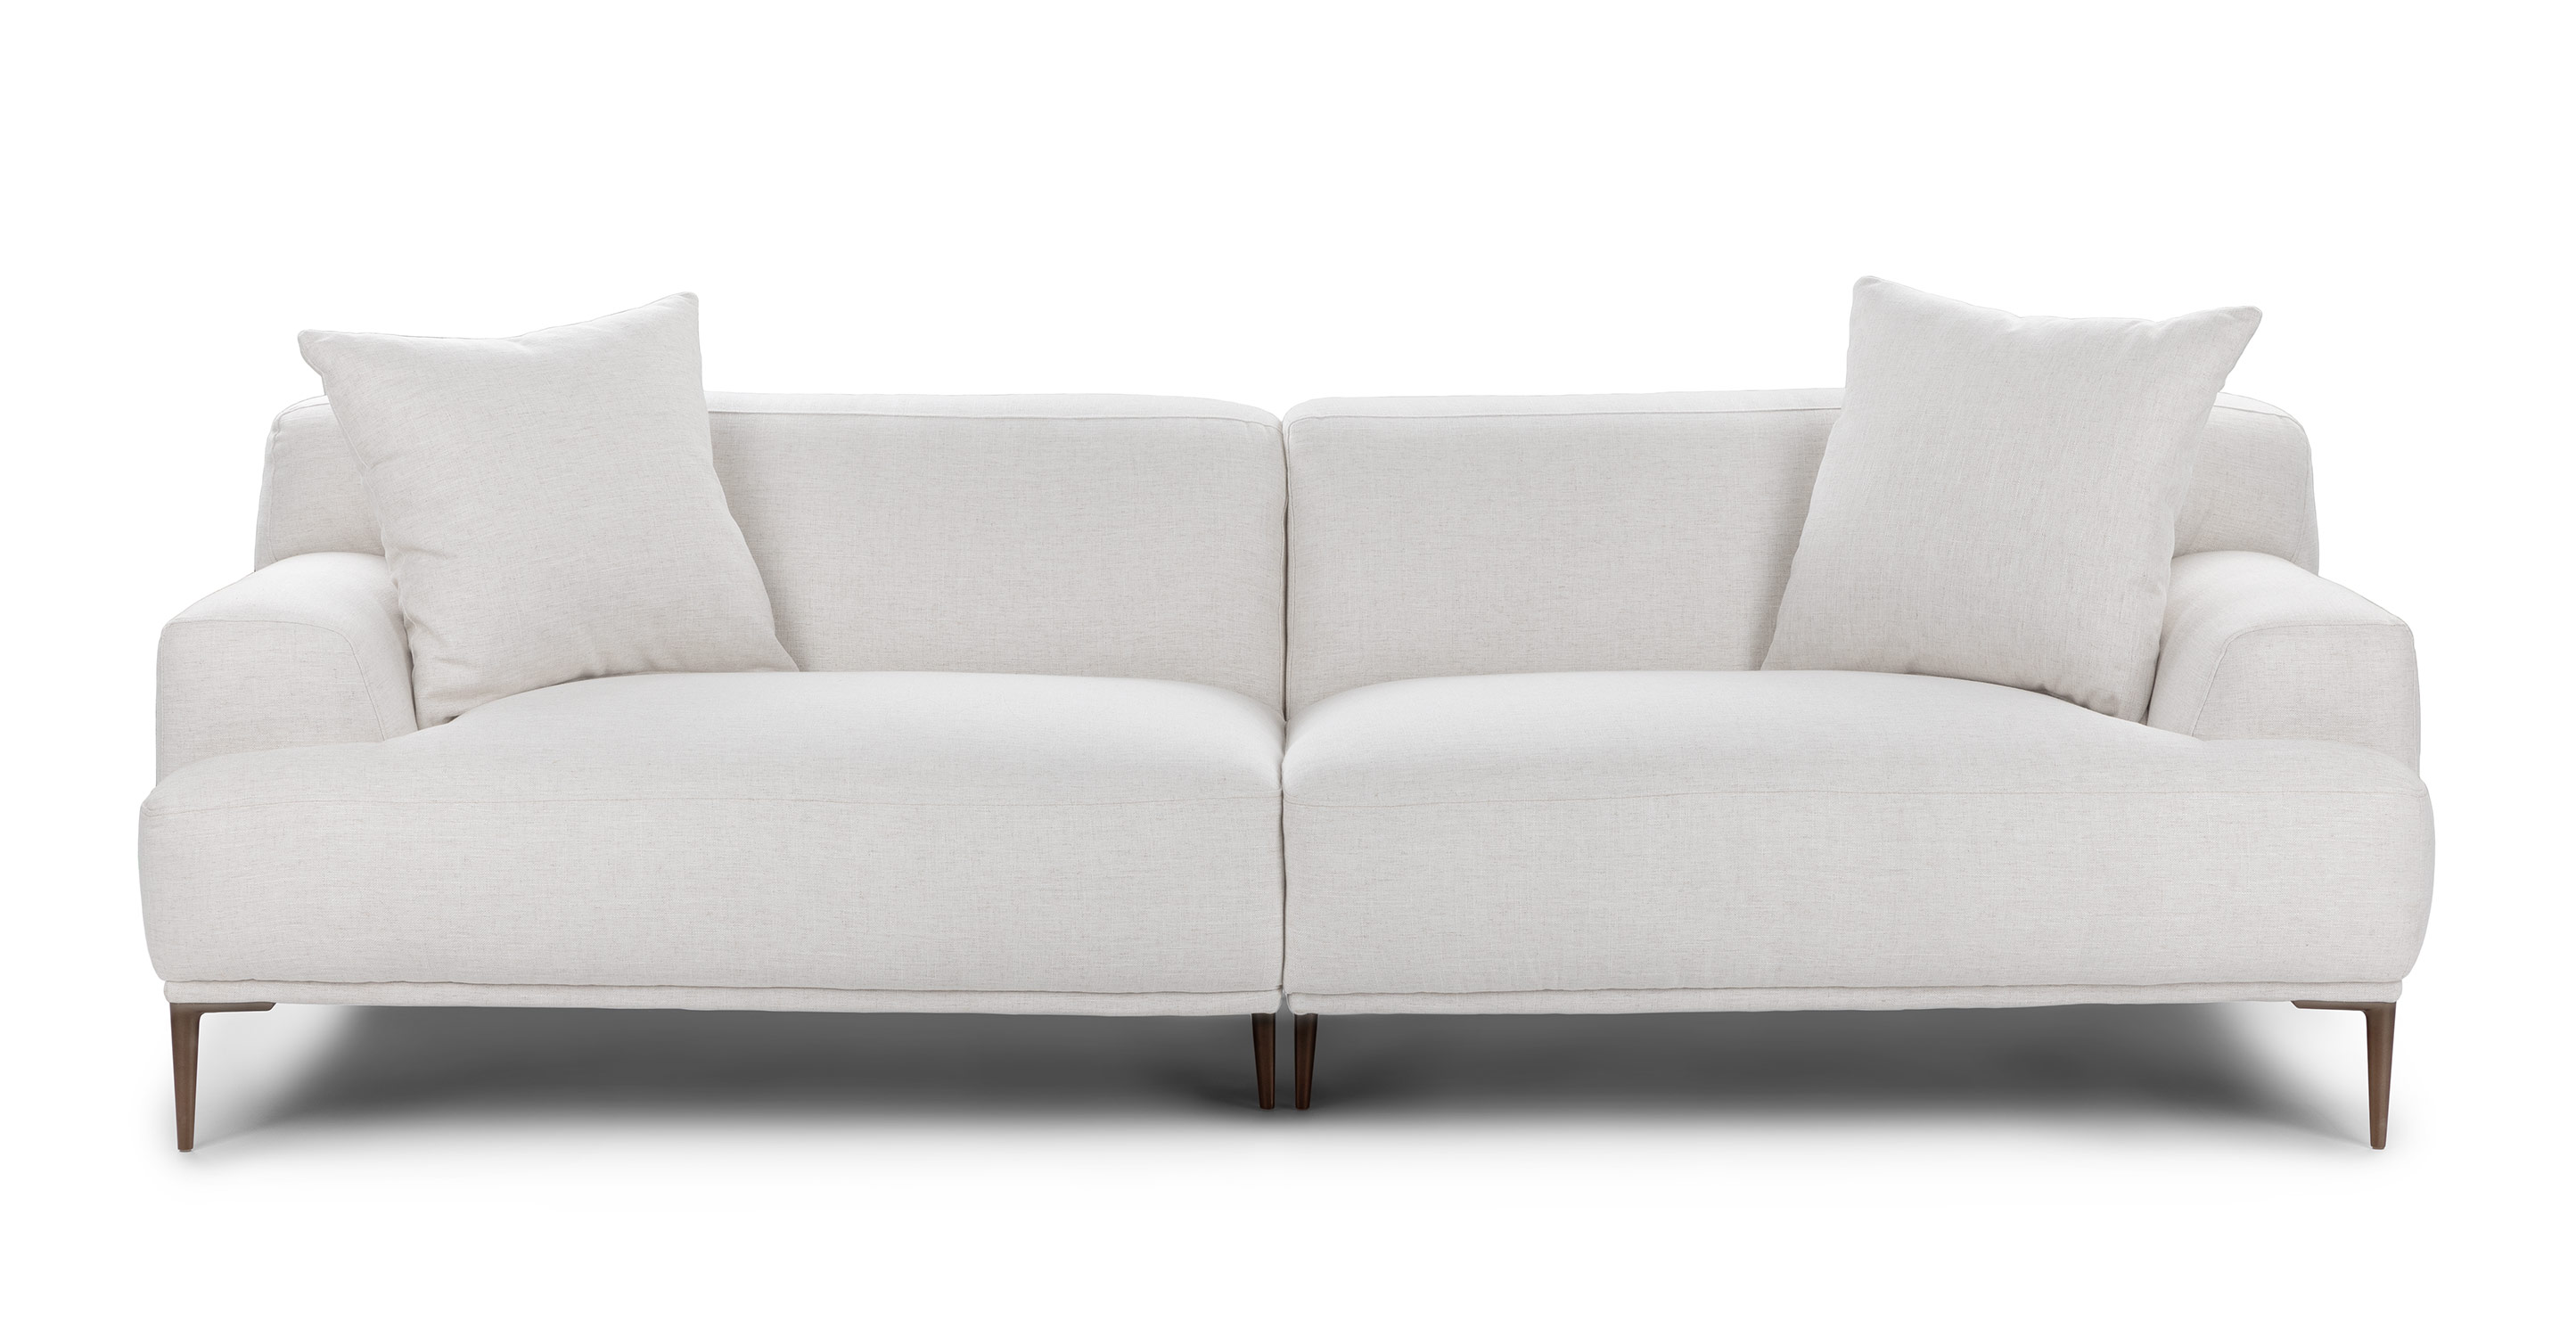 Vandt Overleve svær at tilfredsstille Abisko Quartz White Fabric Sofa | Article